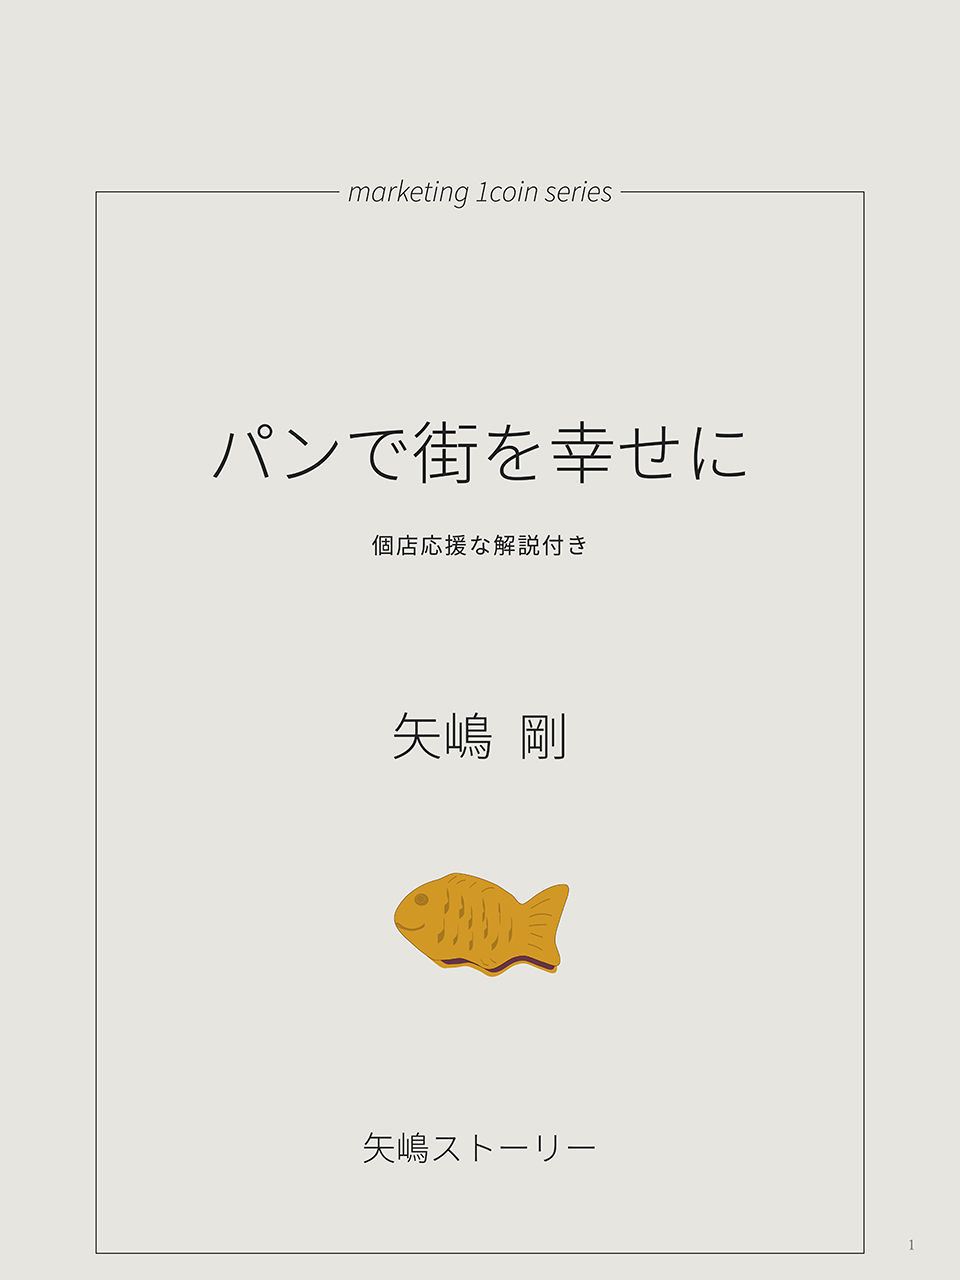 marketing 1coin series(3)『パンで街を幸せに』（矢嶋ストーリー発行、矢嶋剛・著）の扉です。文庫本スタイルで、鯛焼きのイラストを添えたデザインになっています。
